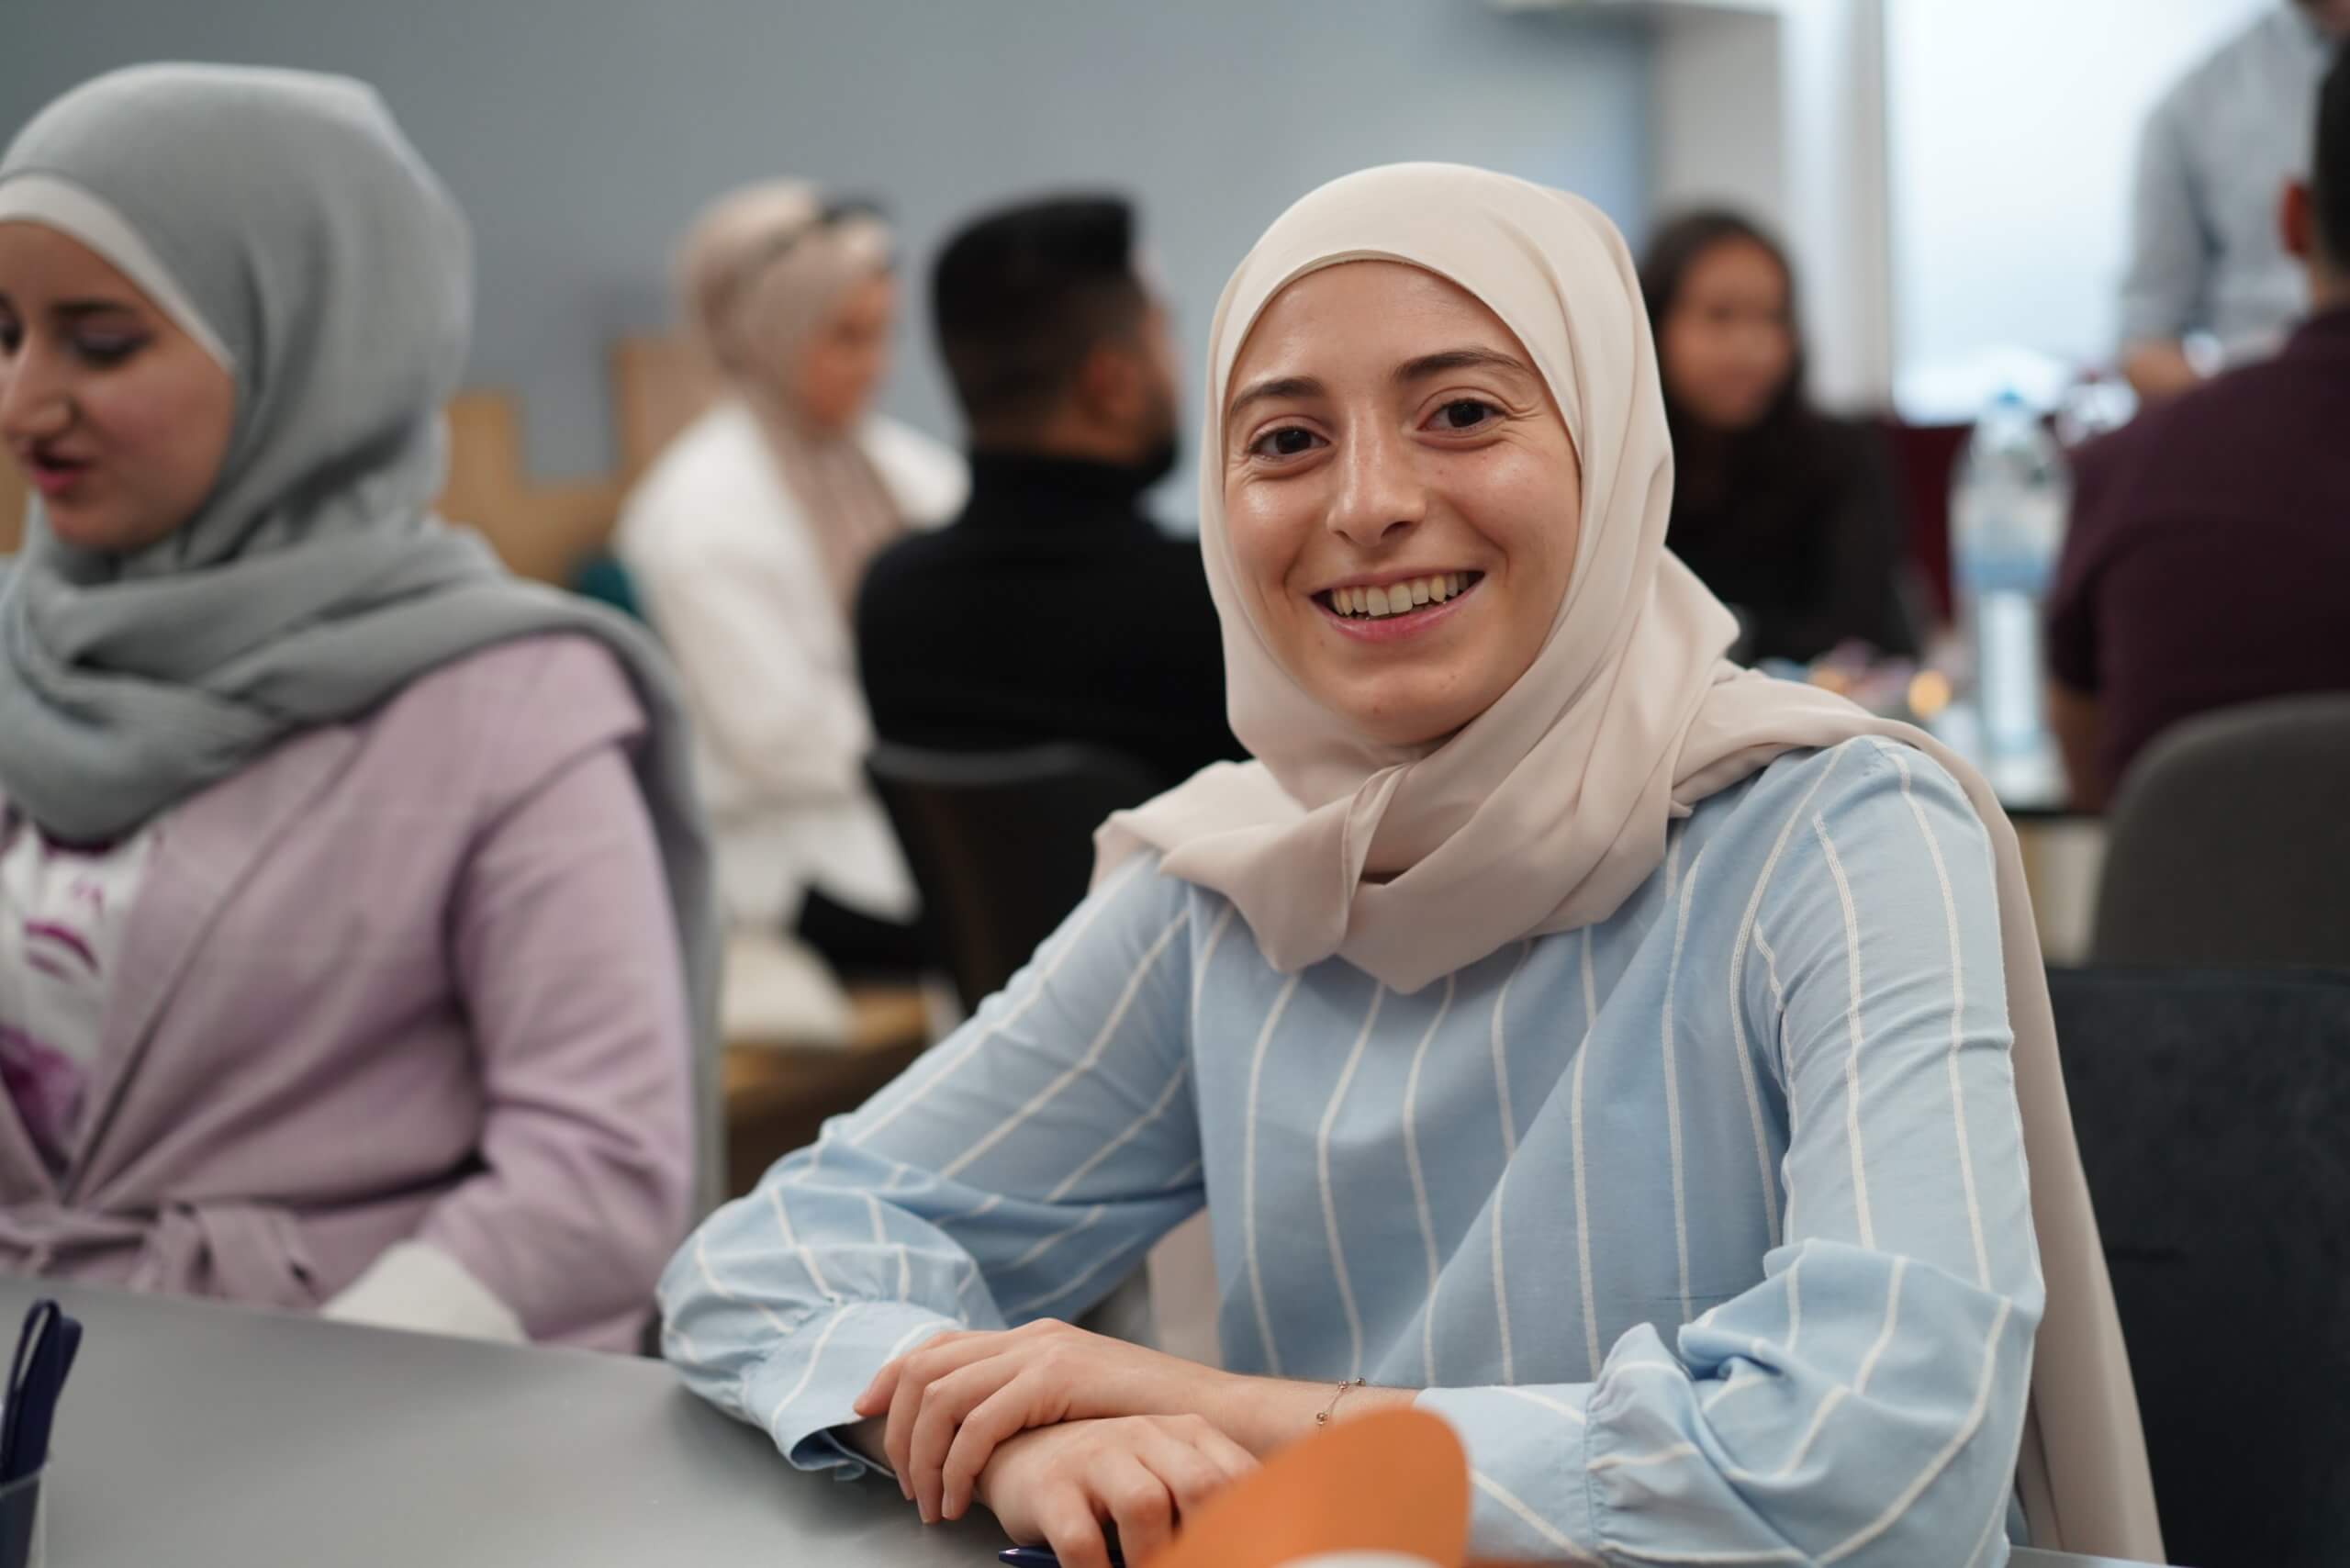 Eine junge Frau mit Hijab lächelt in die Kamera und sitzt in einem Workshopraum mit anderen Teilnehmer:innen.